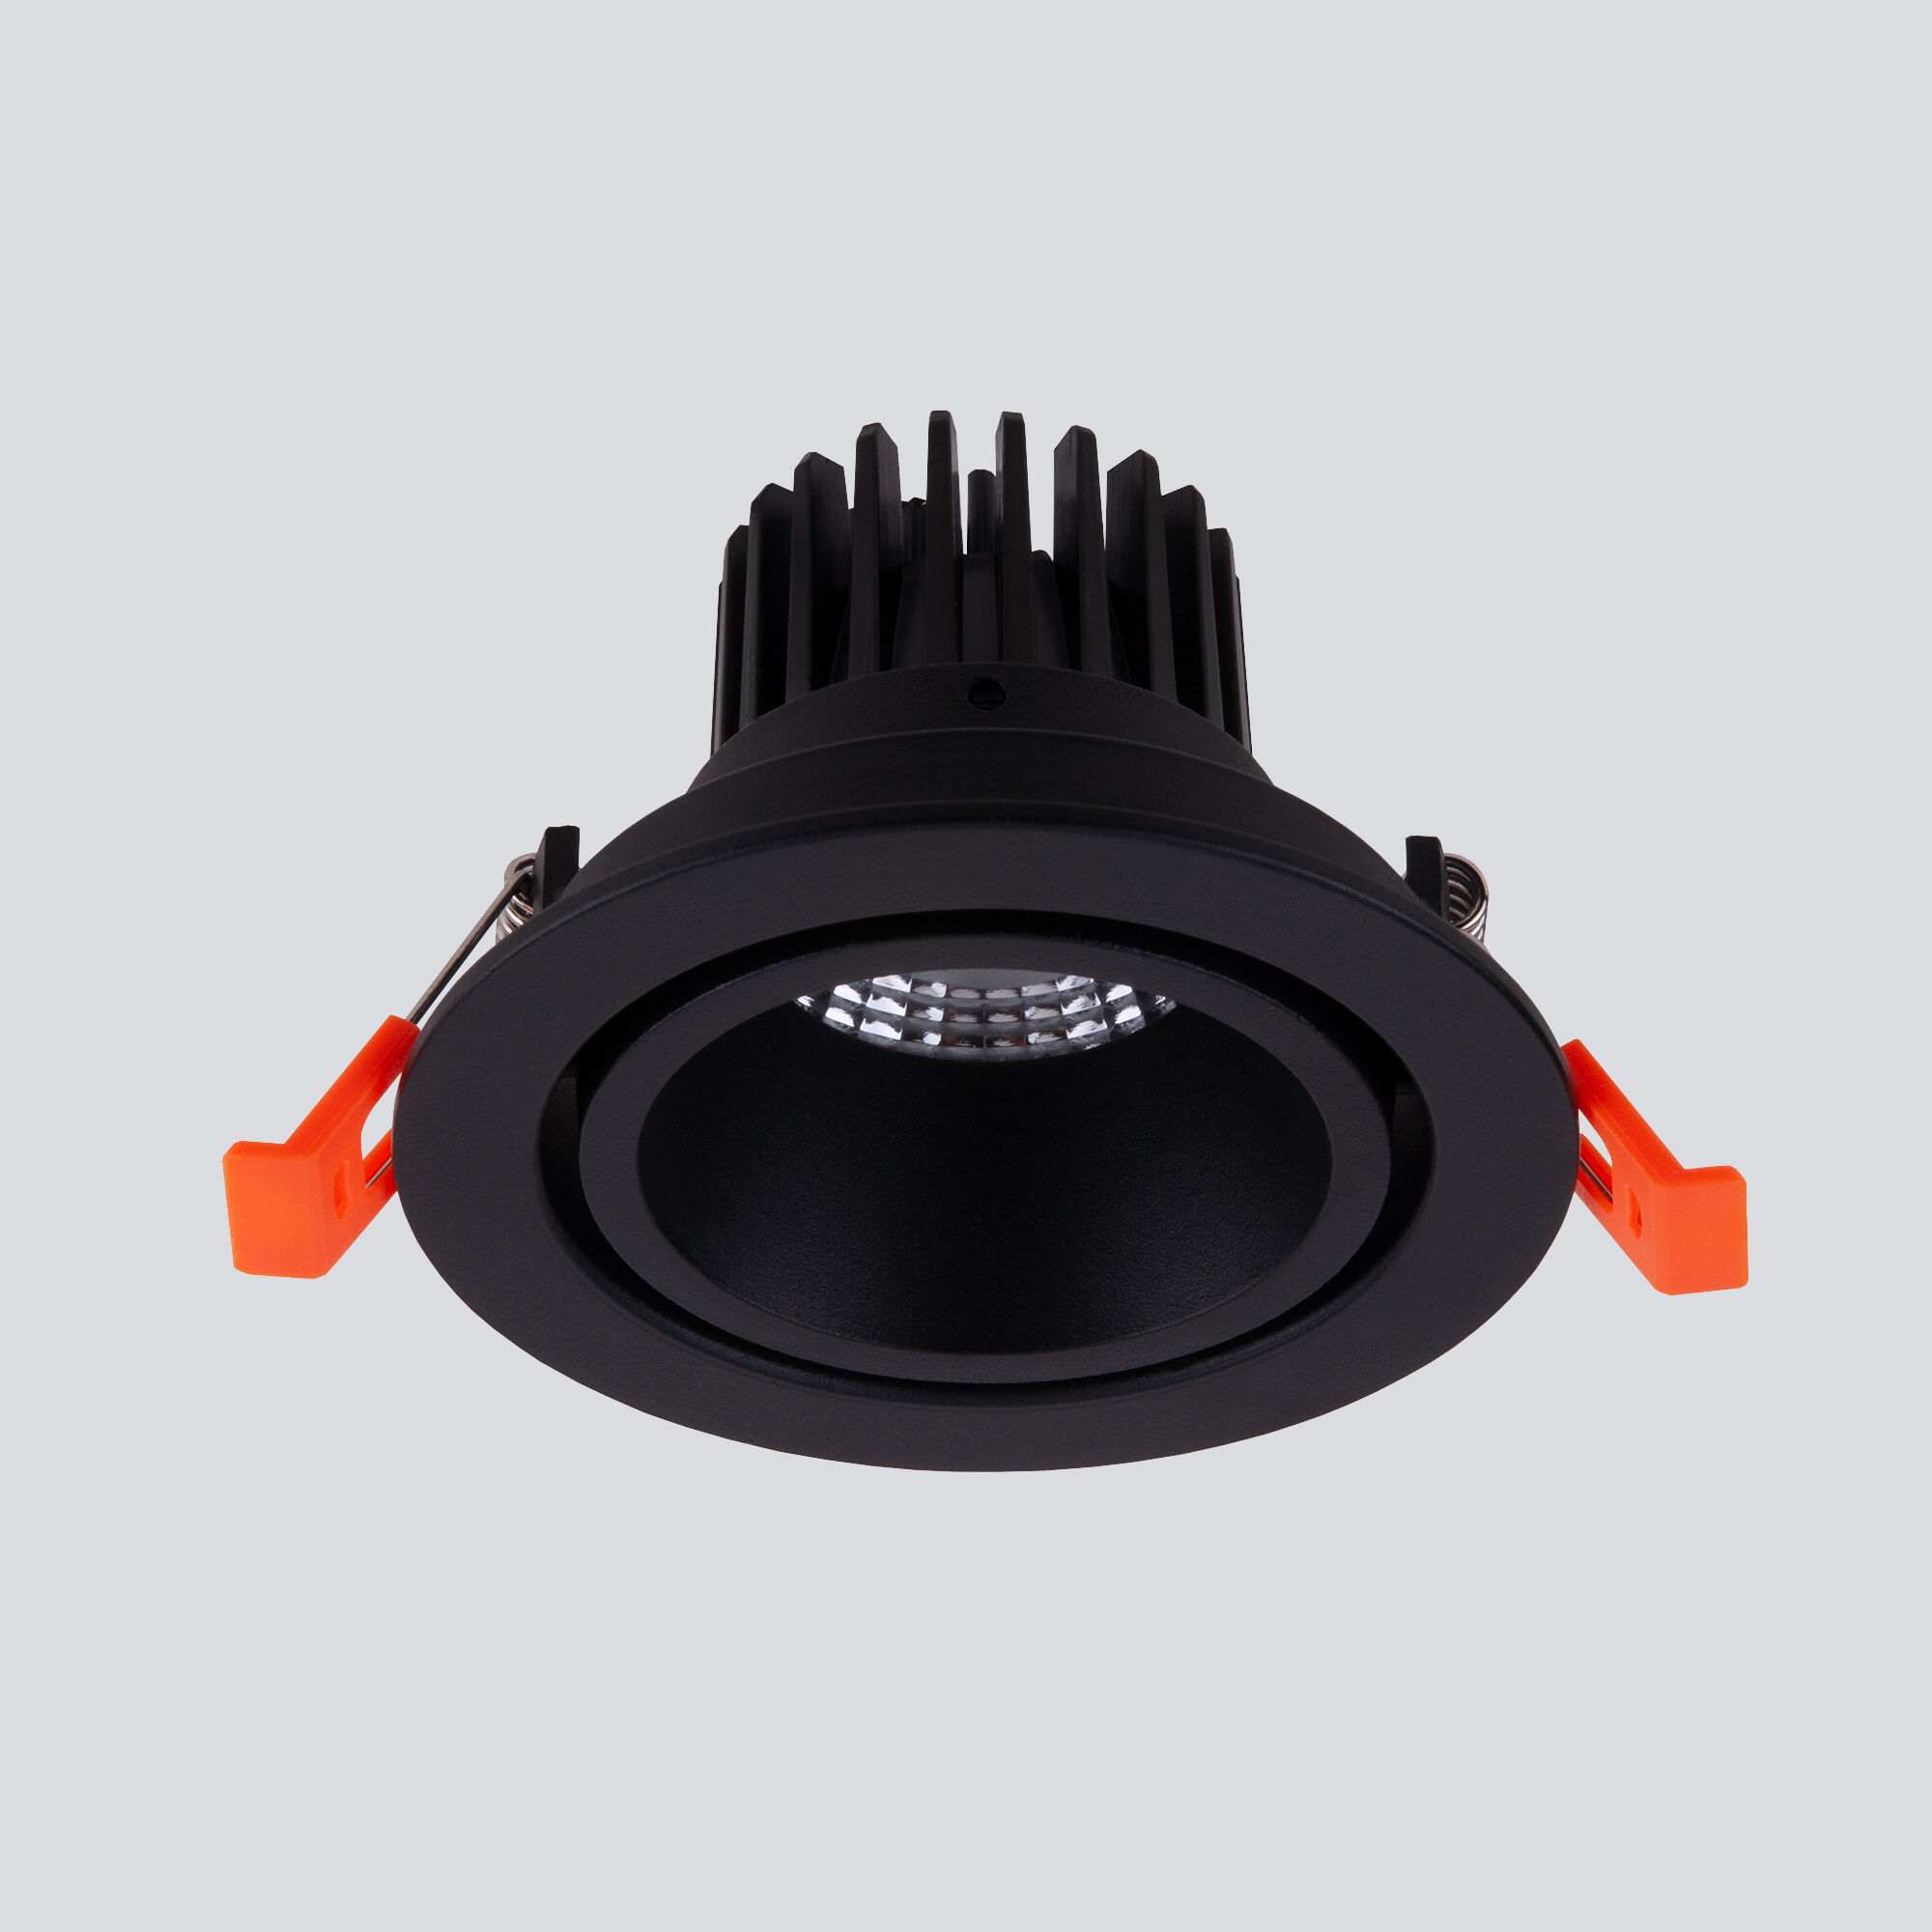 Встраиваемый светодиодный светильник Nulla 7W 4200K черный 15267/LED 7W 4200K черный